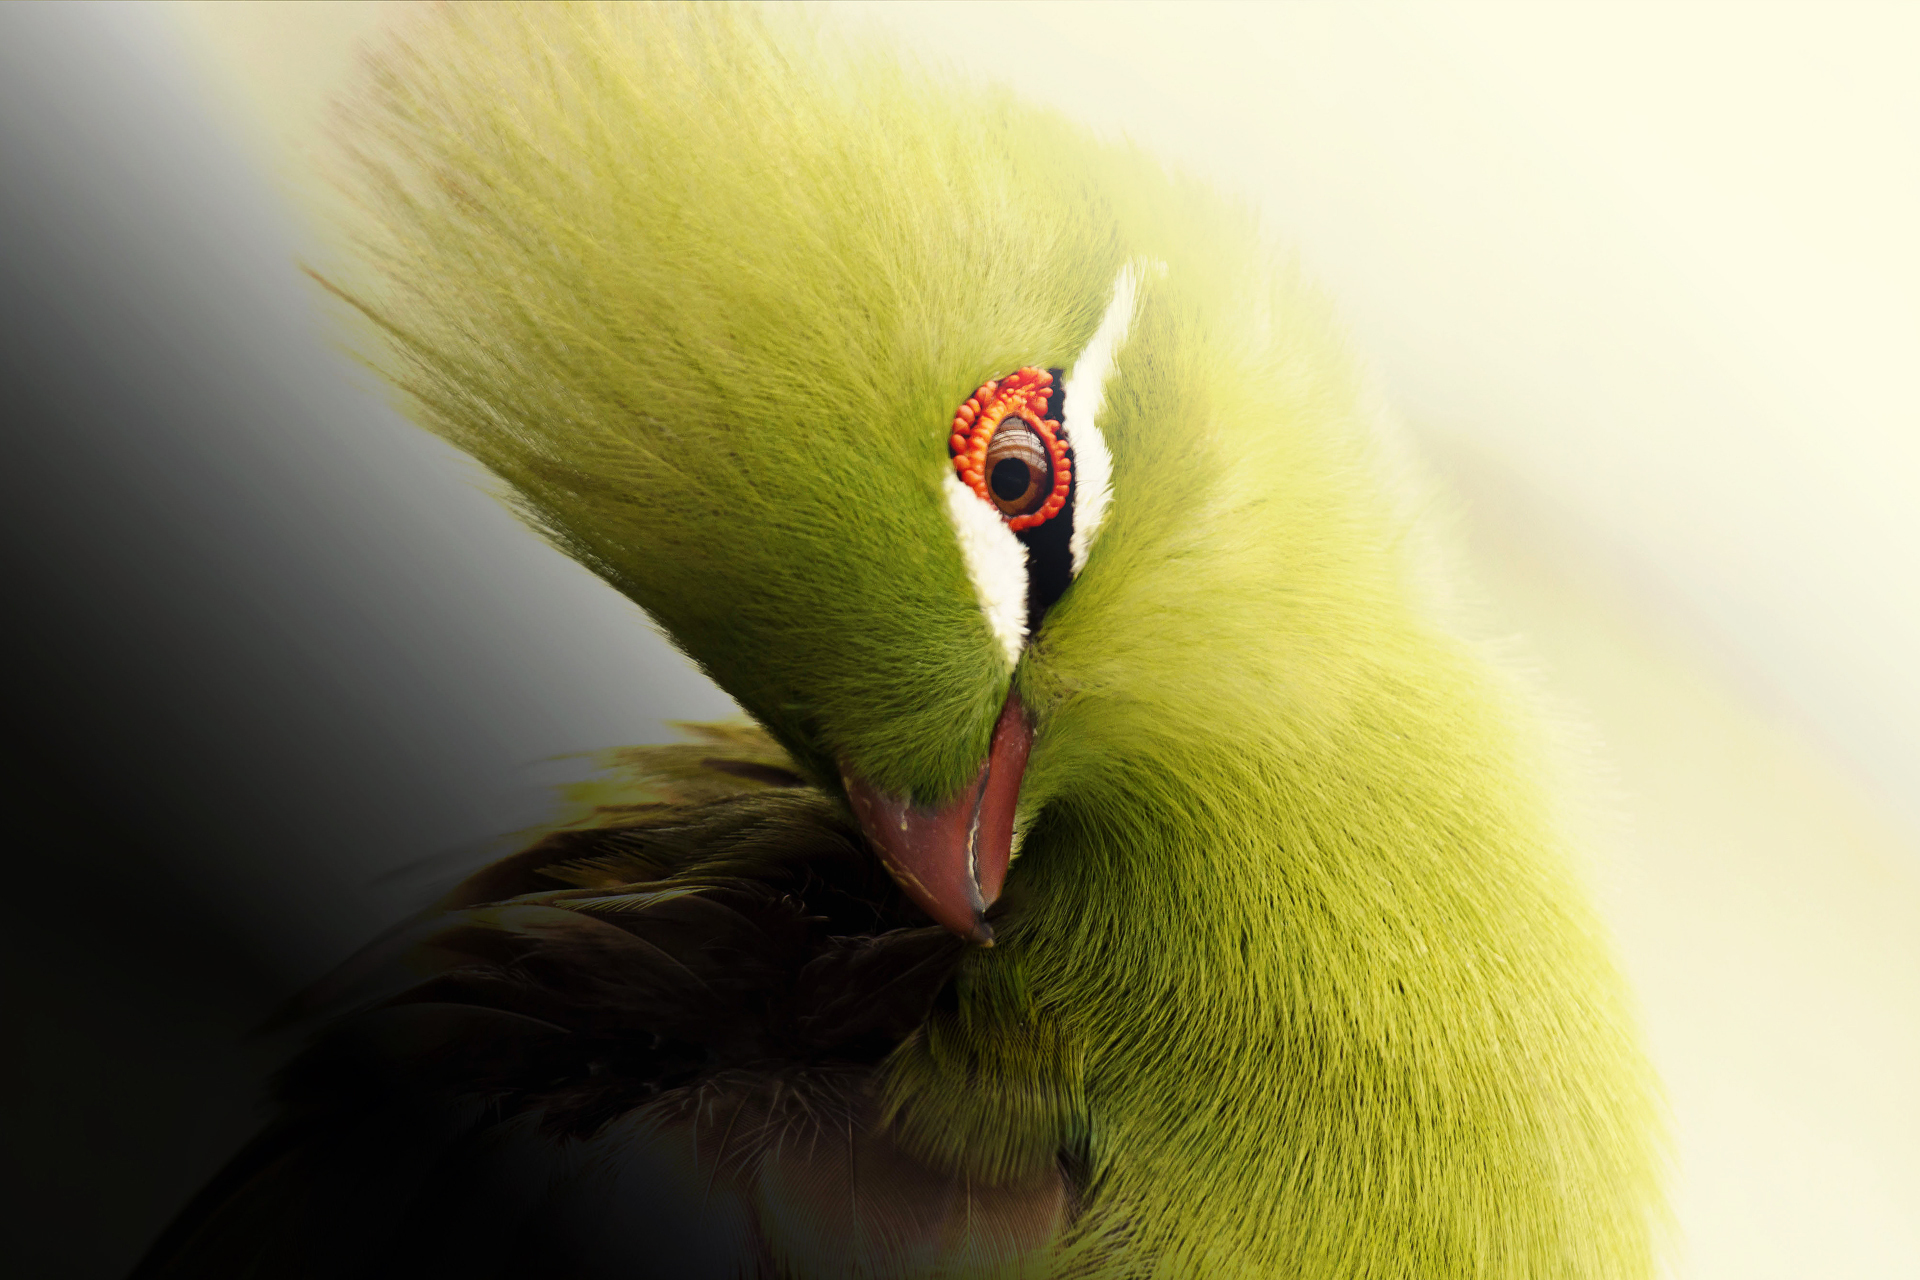 miglior wallpaper per uccelli,verde,giallo,avvicinamento,macrofotografia,uccello